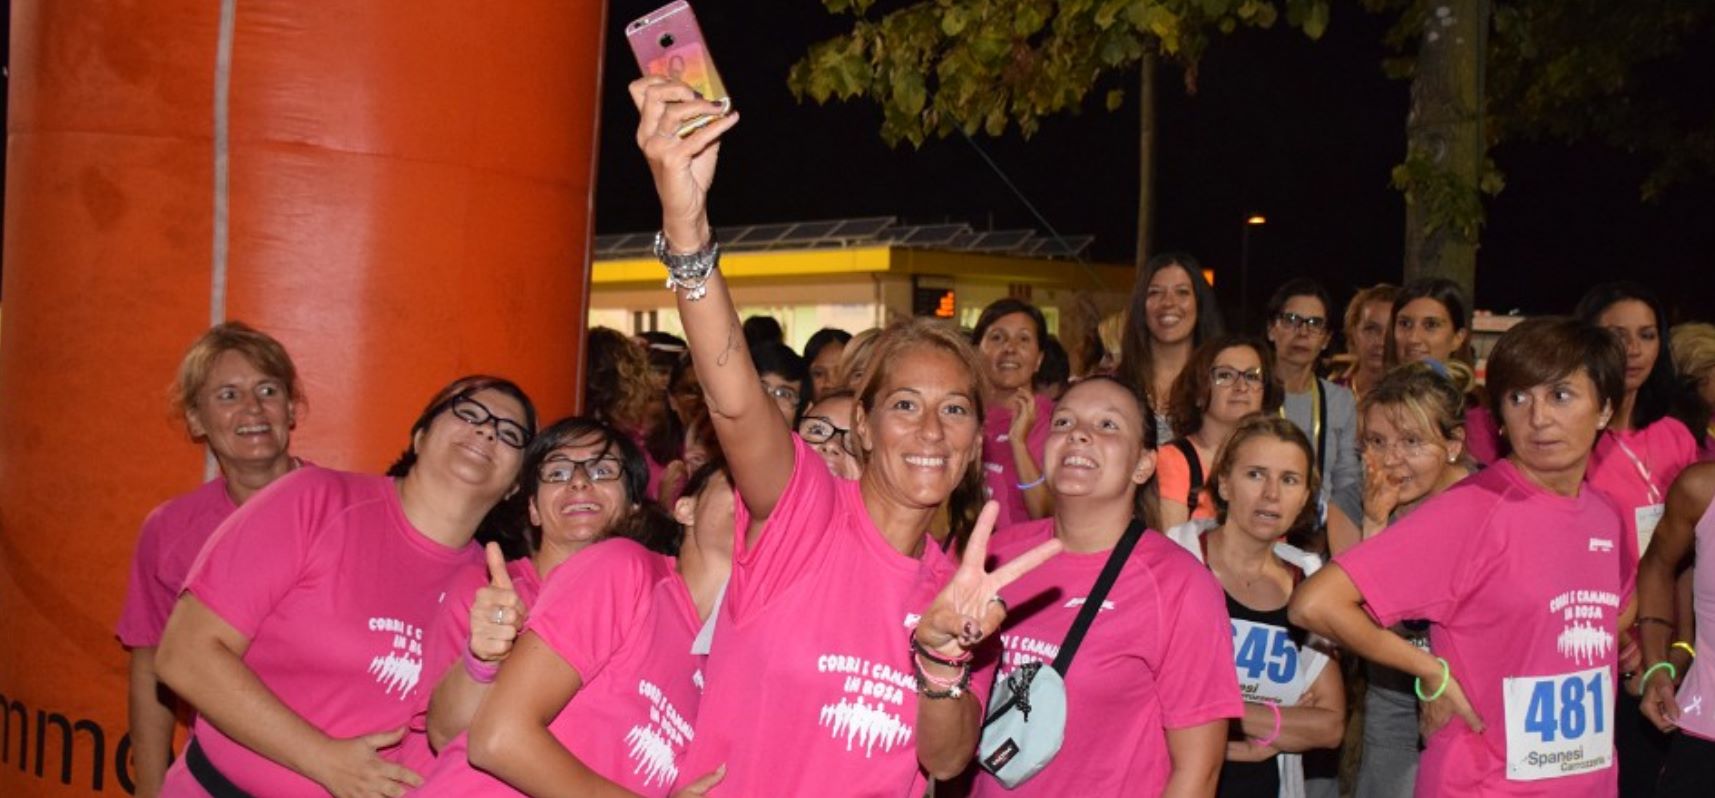 Corri in rosa, una manifestazione dedicata alle donne